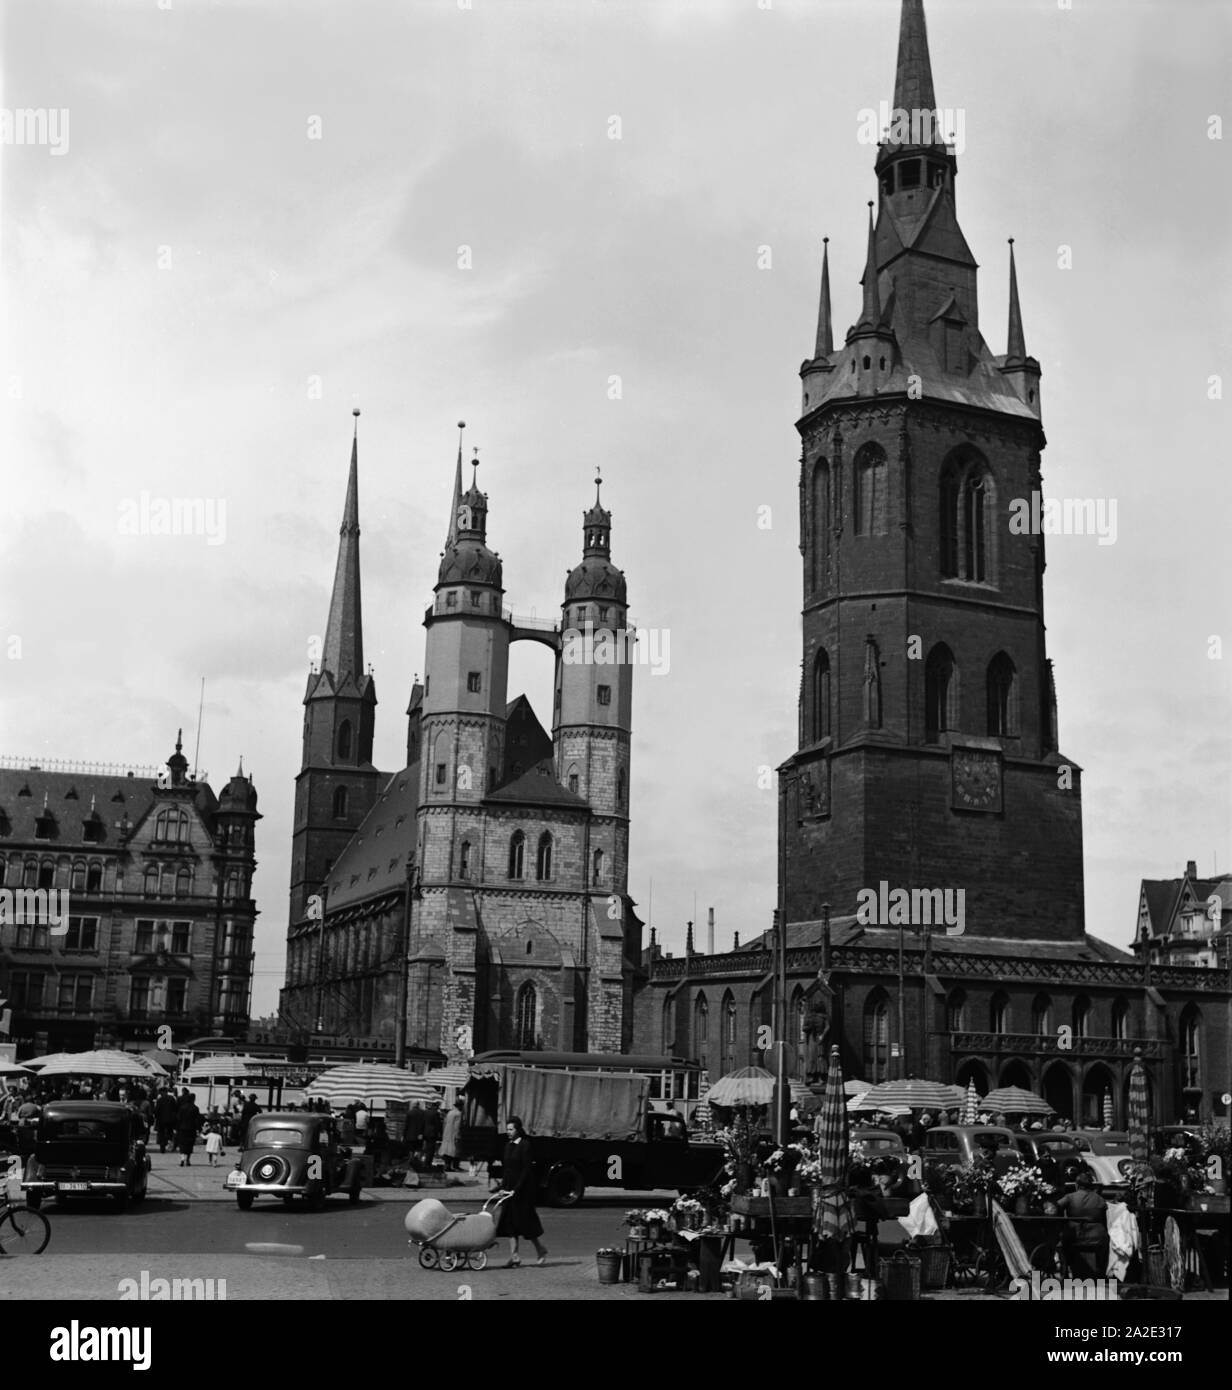 Die Marktkirche und der Rote Turm in der Stadt Halle an der Saale, Deutschland 1930er Jahre. La chiesa di Santa Maria e Roter Turm belfry sono un punto di riferimento della città di Halle, Germania 1930s. Foto Stock